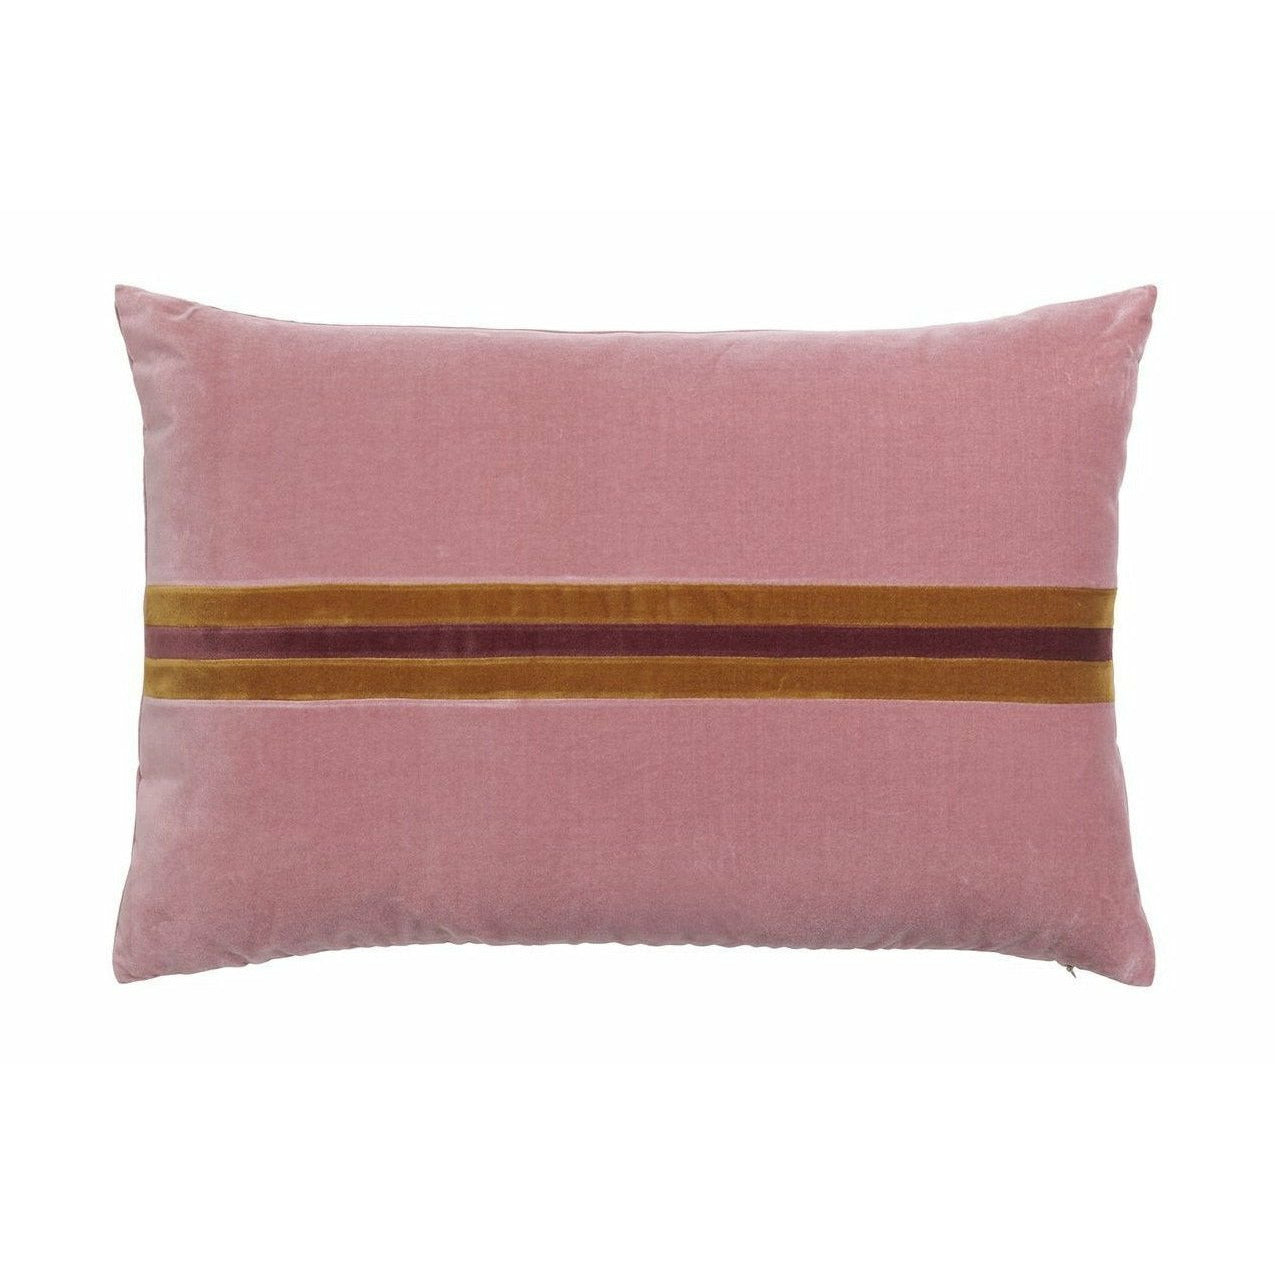 Christina Lundsteen Harlow Velvet Pillow, oude roos/karamel/snoei